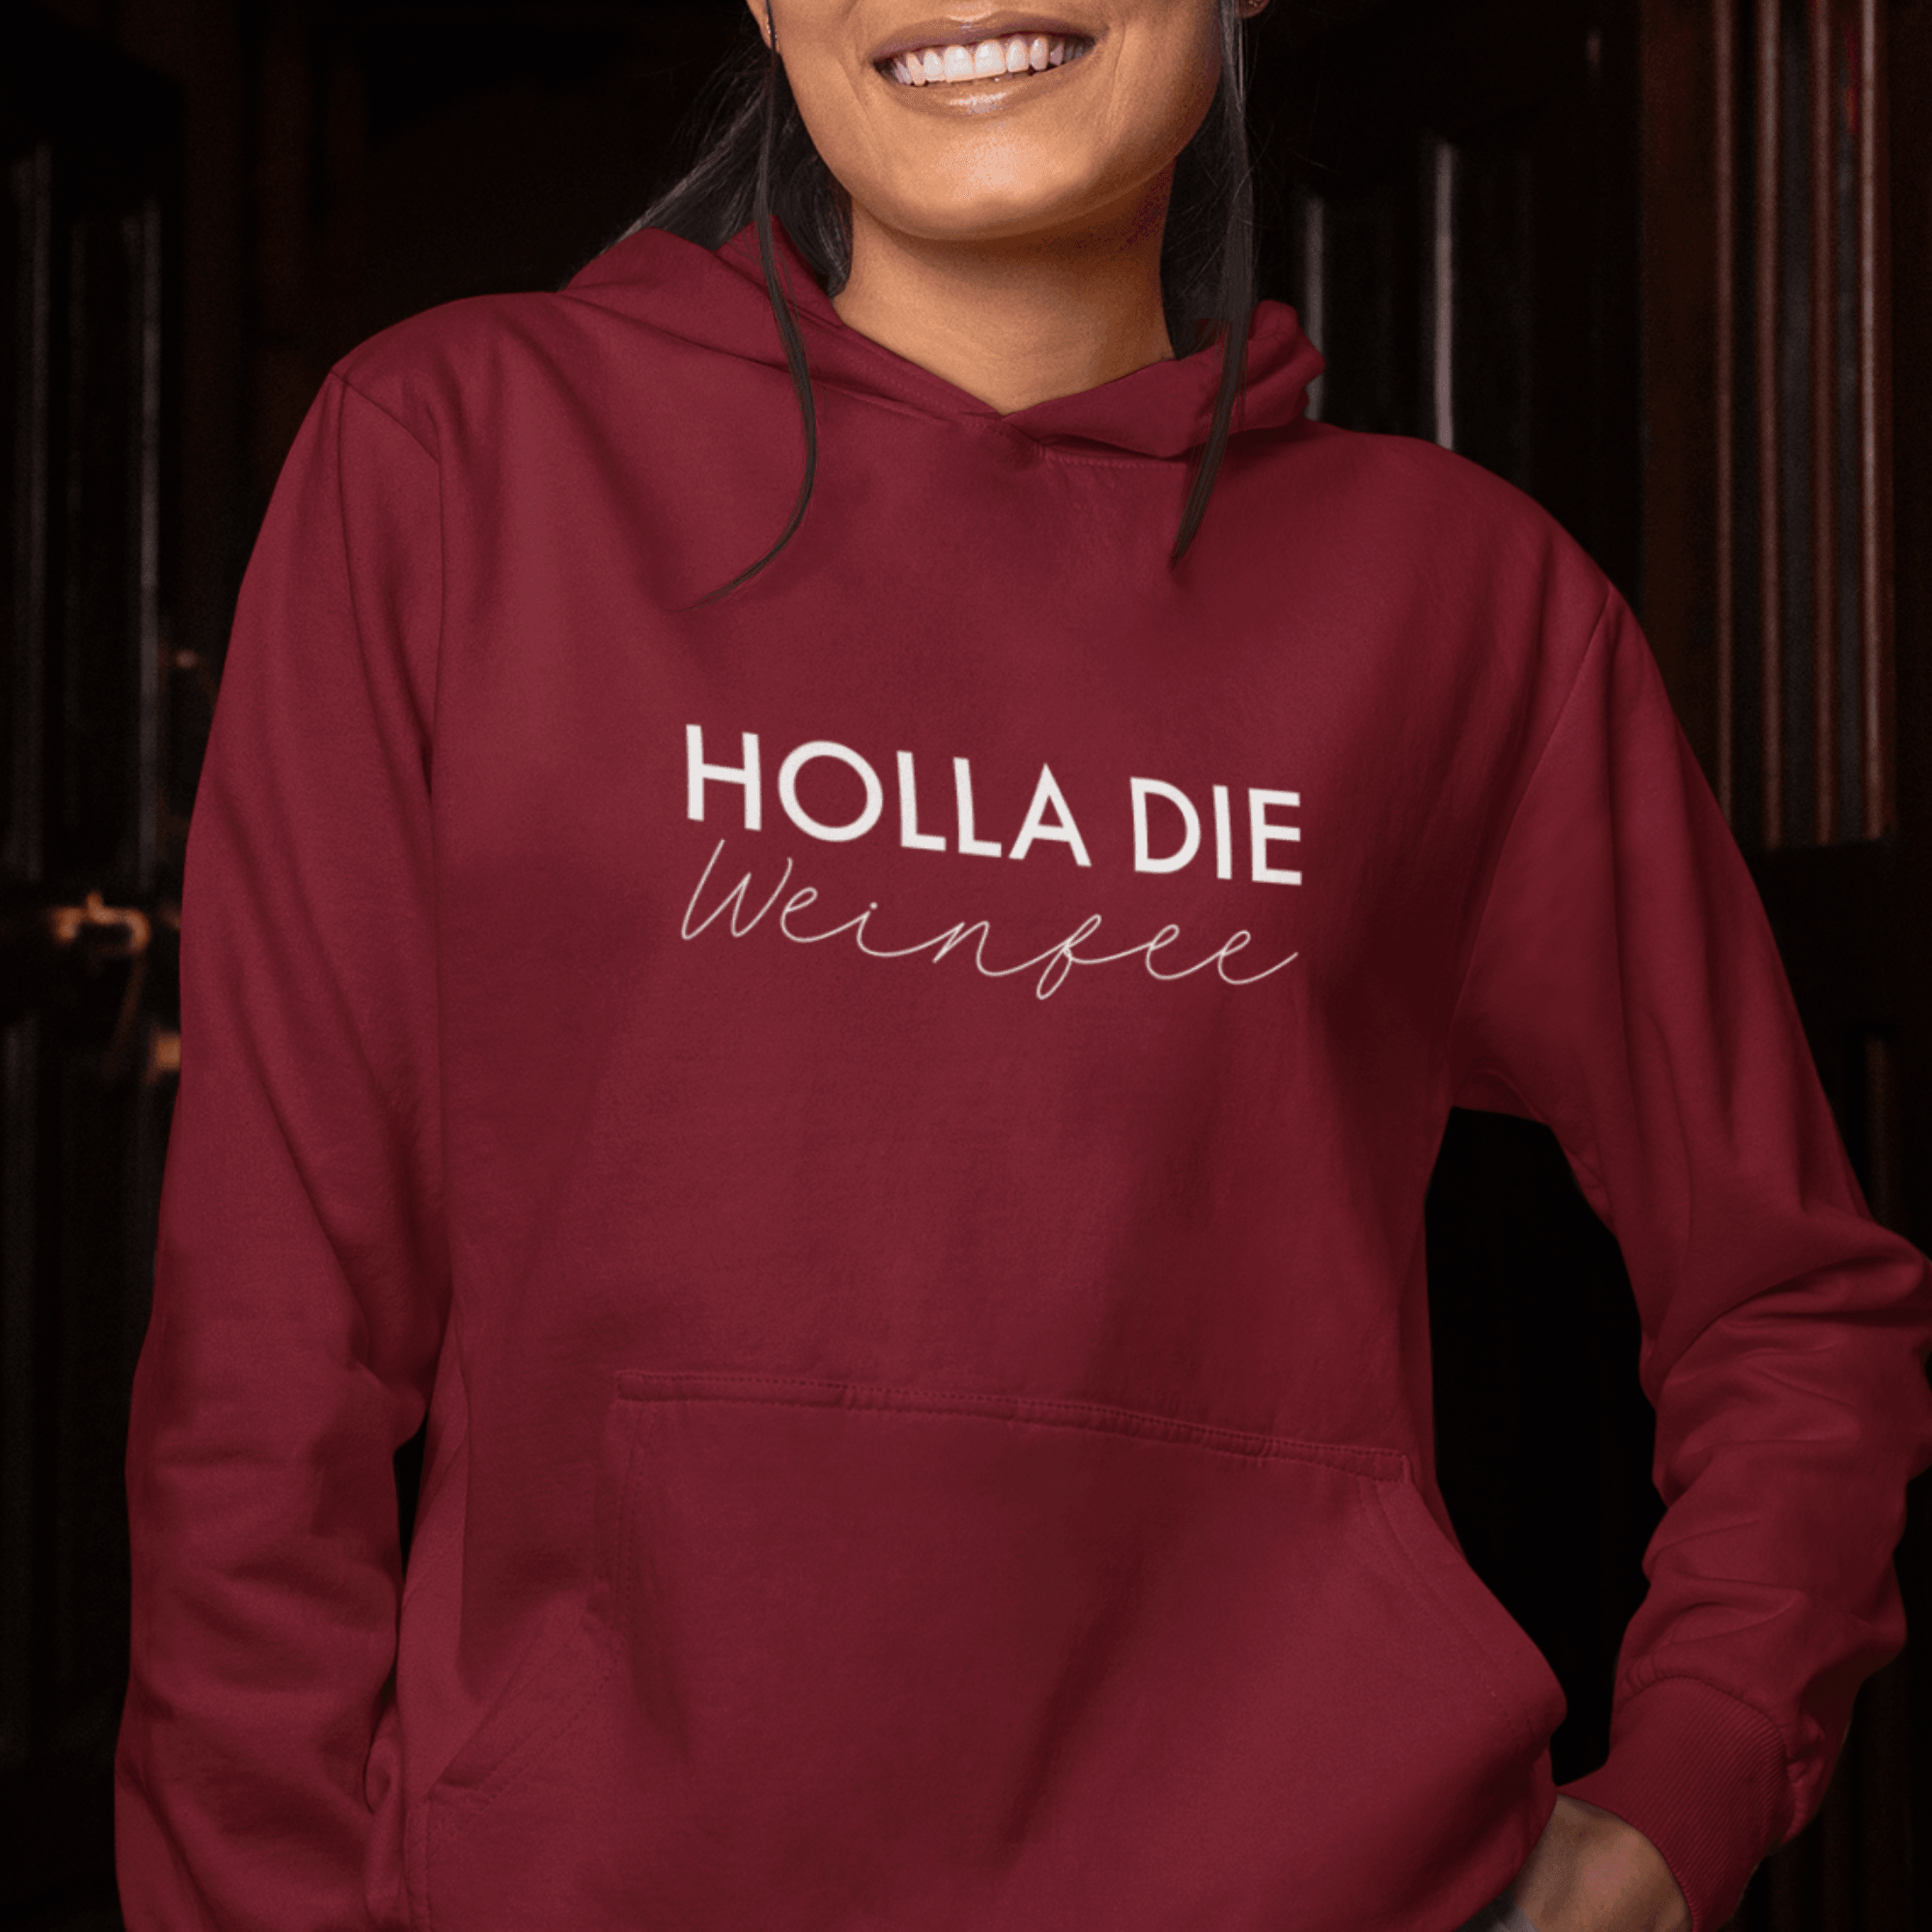 HOLLA DIE WEINFEE  - Damen Hoodie aus Bio-Baumwolle